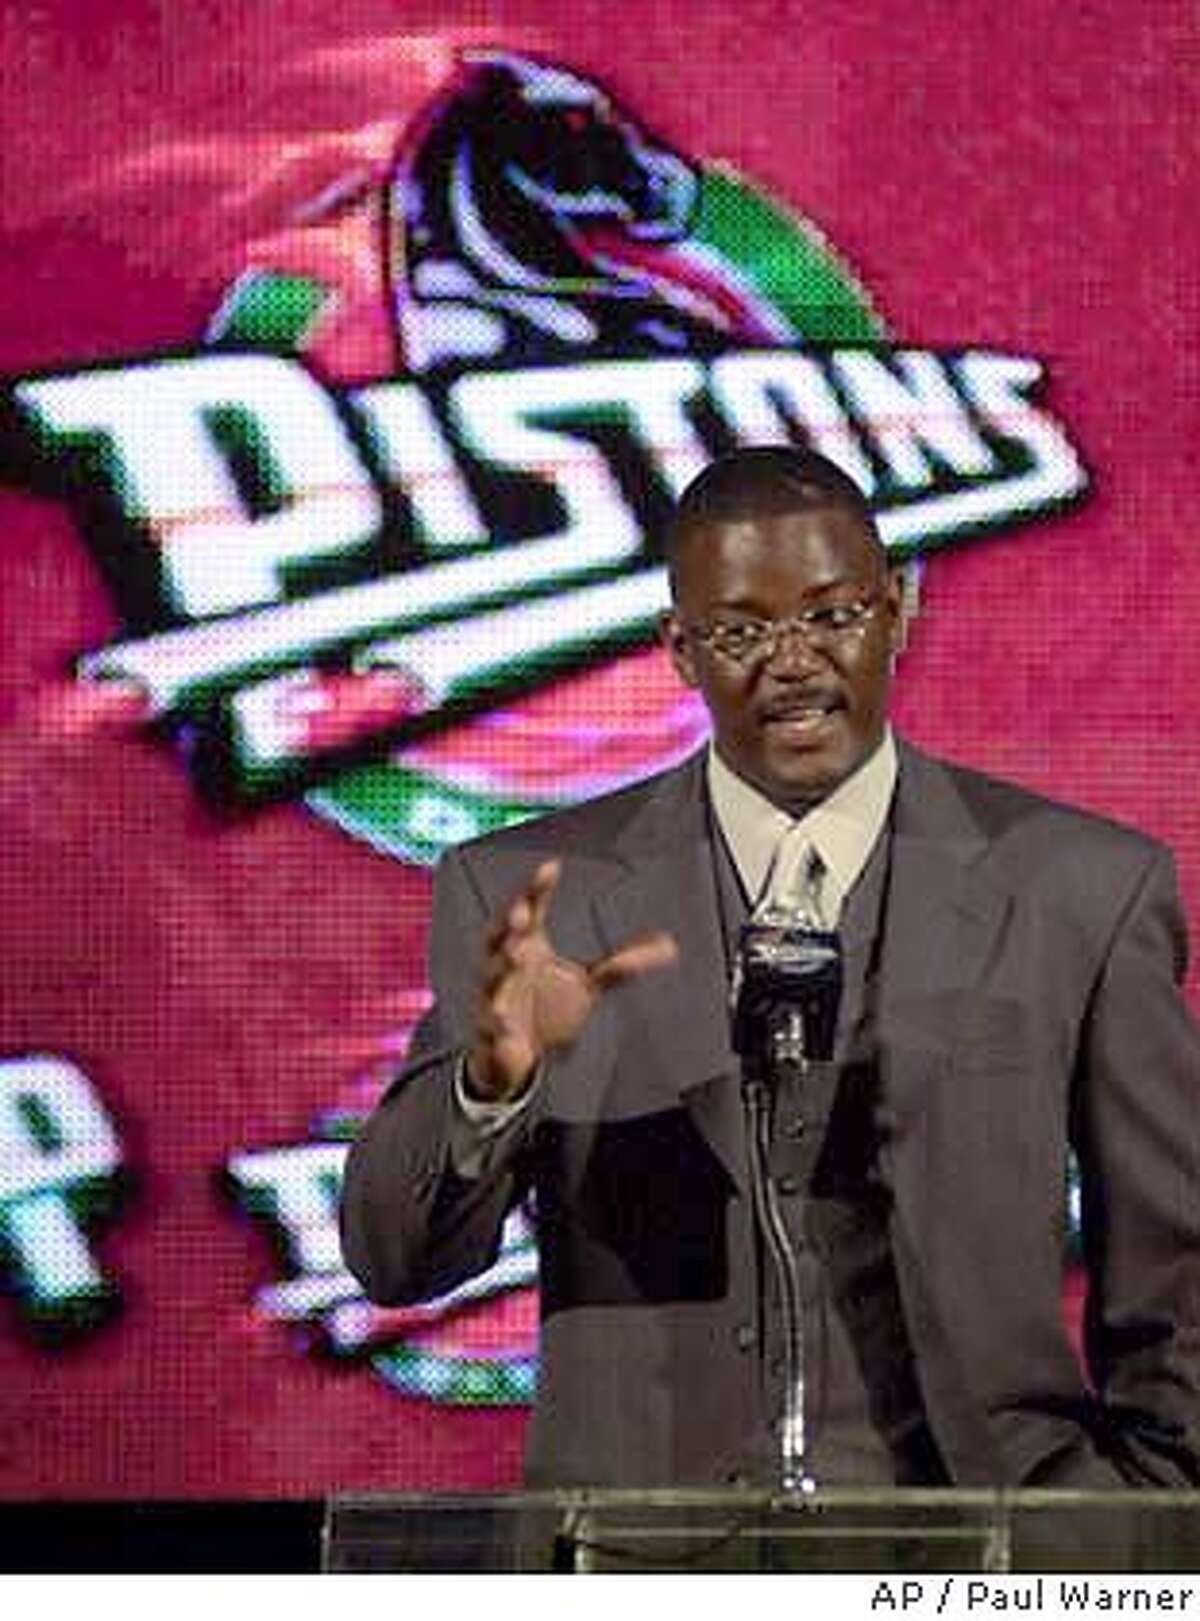 Joe Dumars is done as the Detroit Pistons' President of Basketball